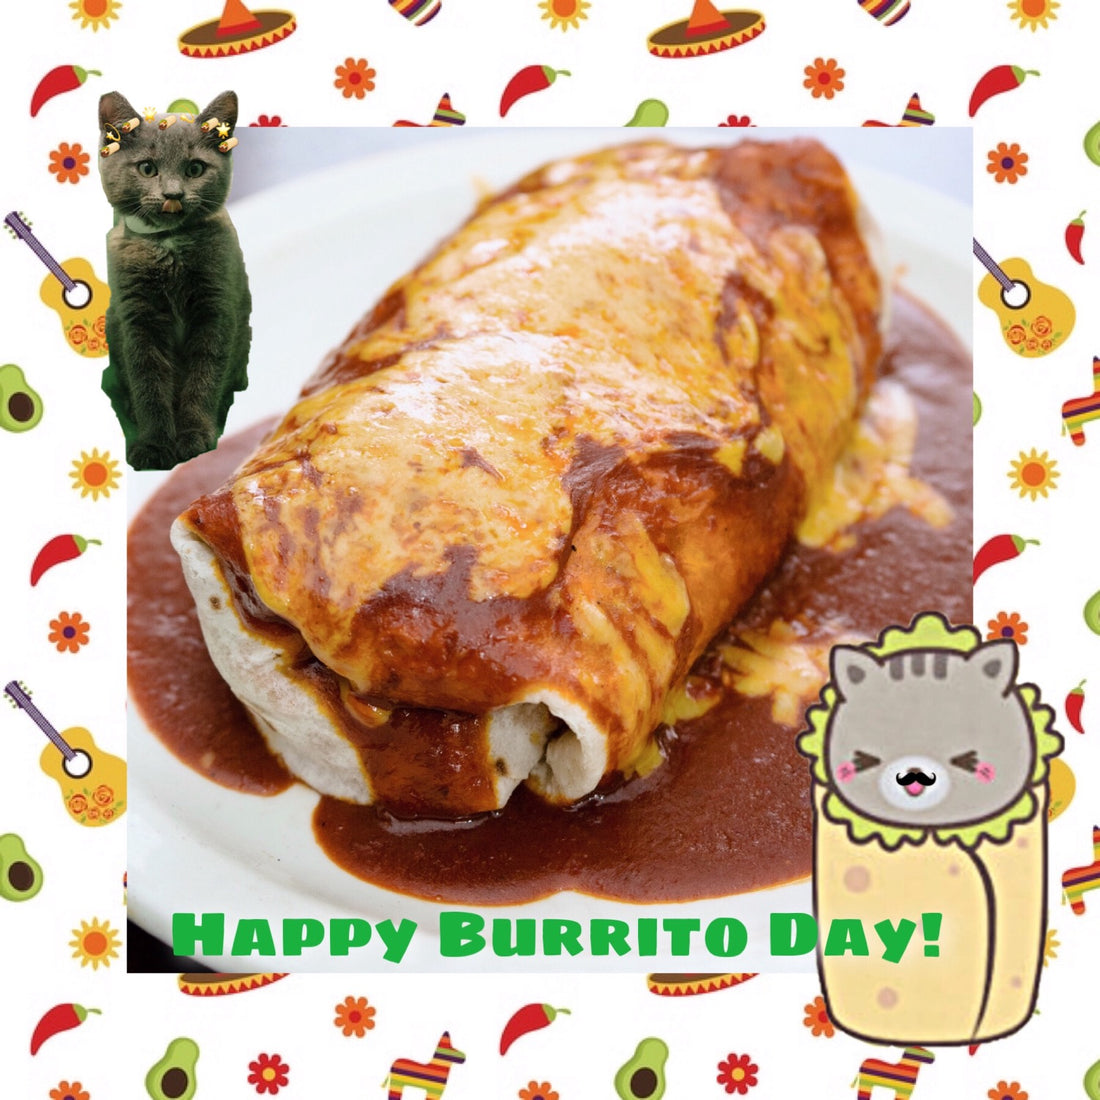 Burrito Day!